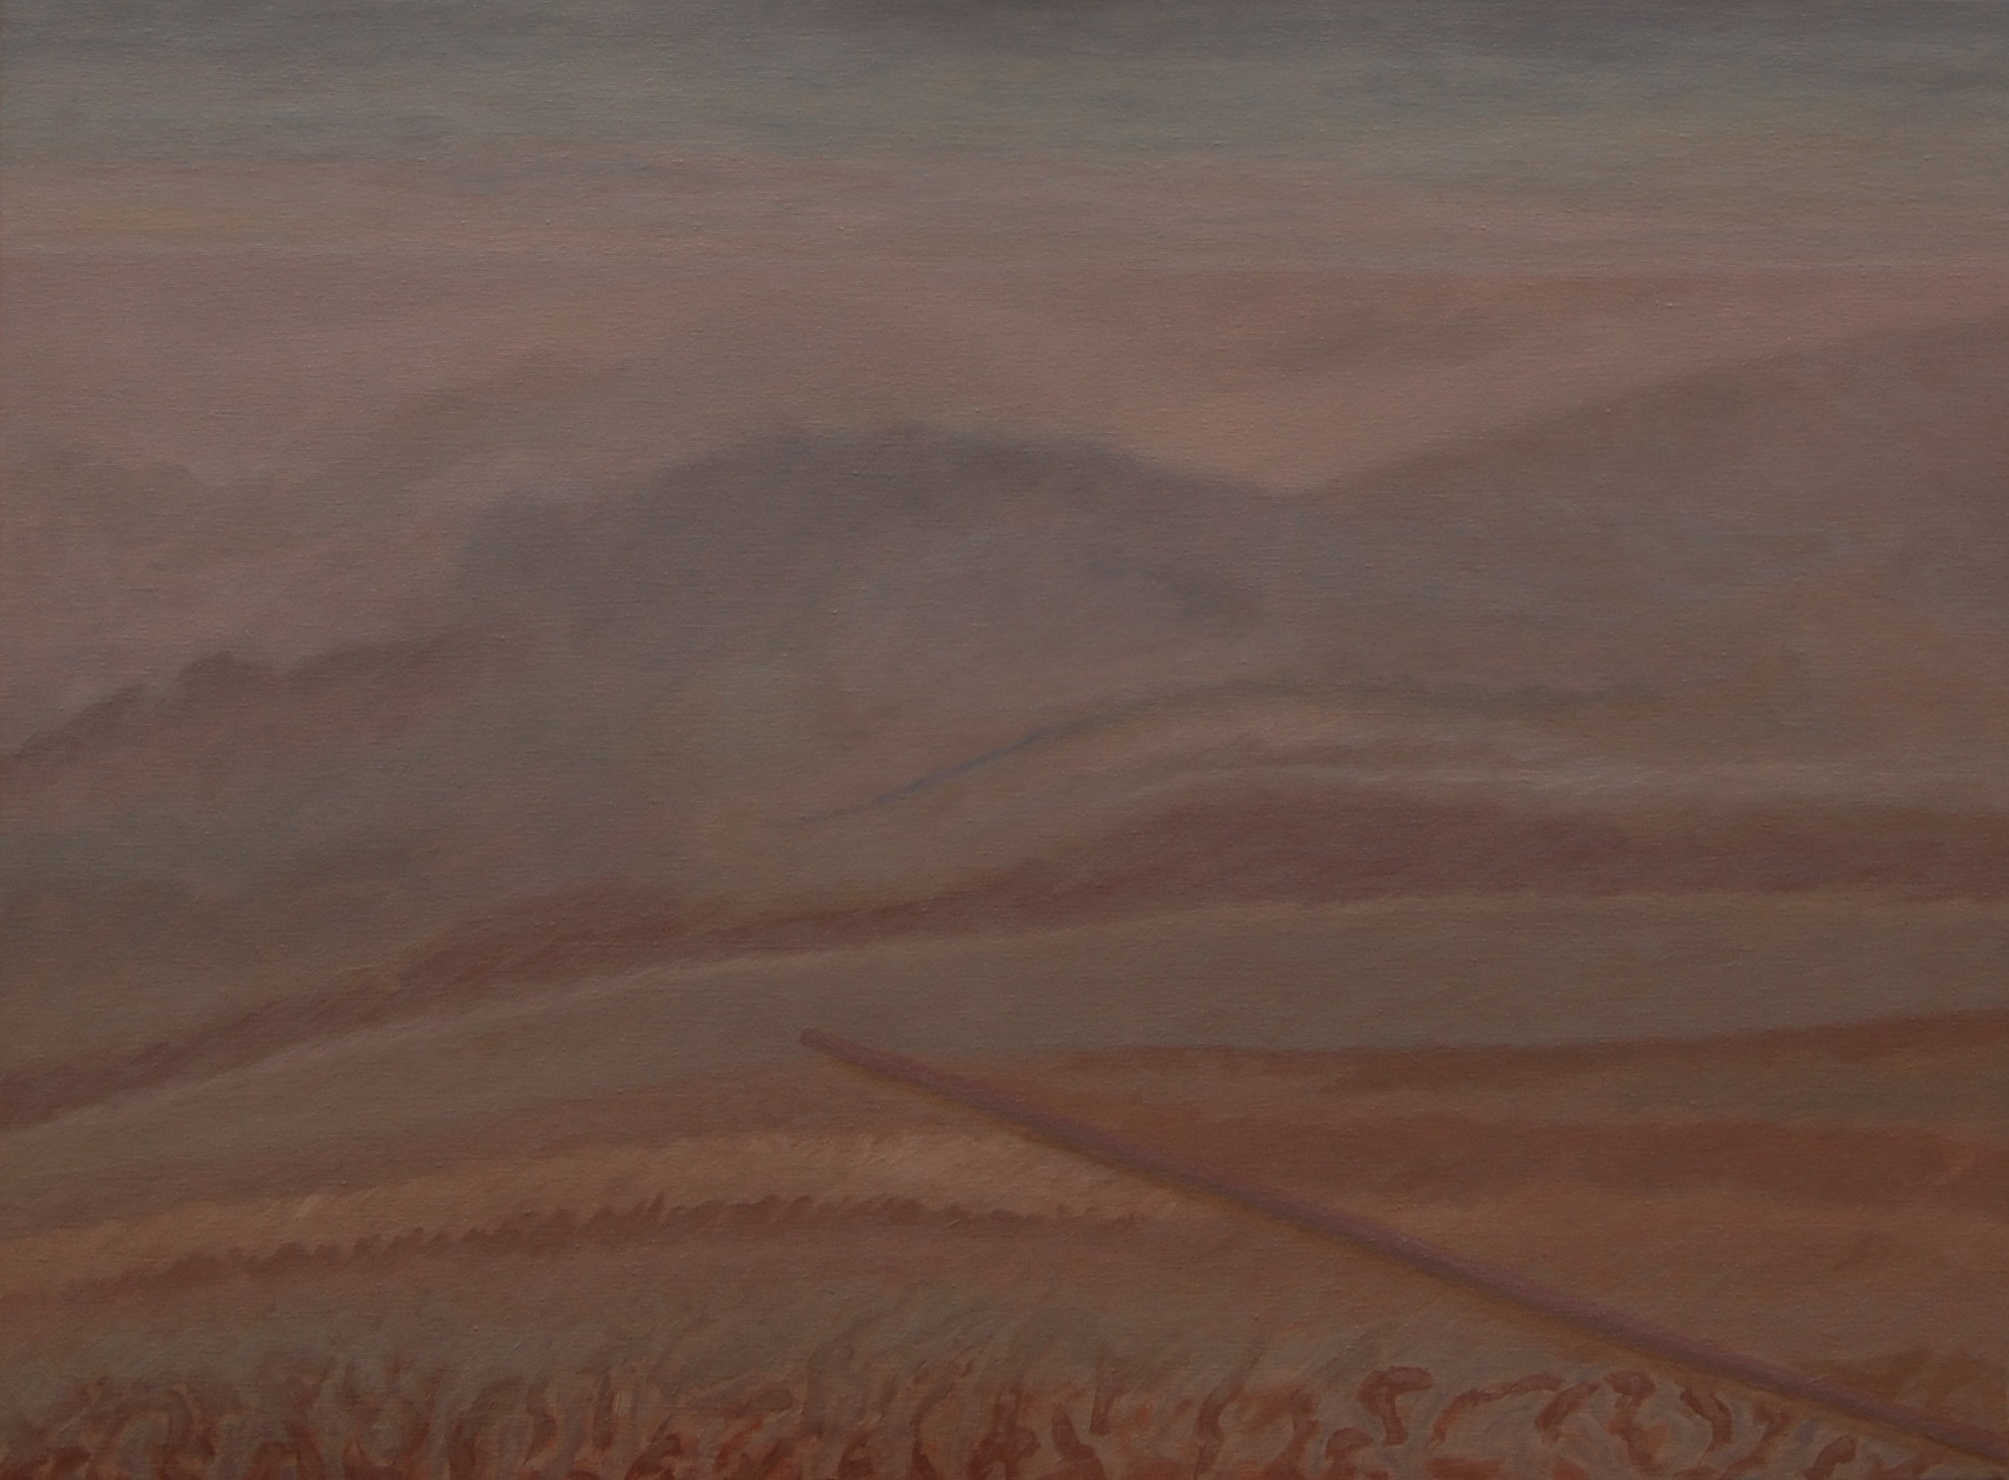 12 (acrylic, oil on canvas, 80x60 cm), 2015-16